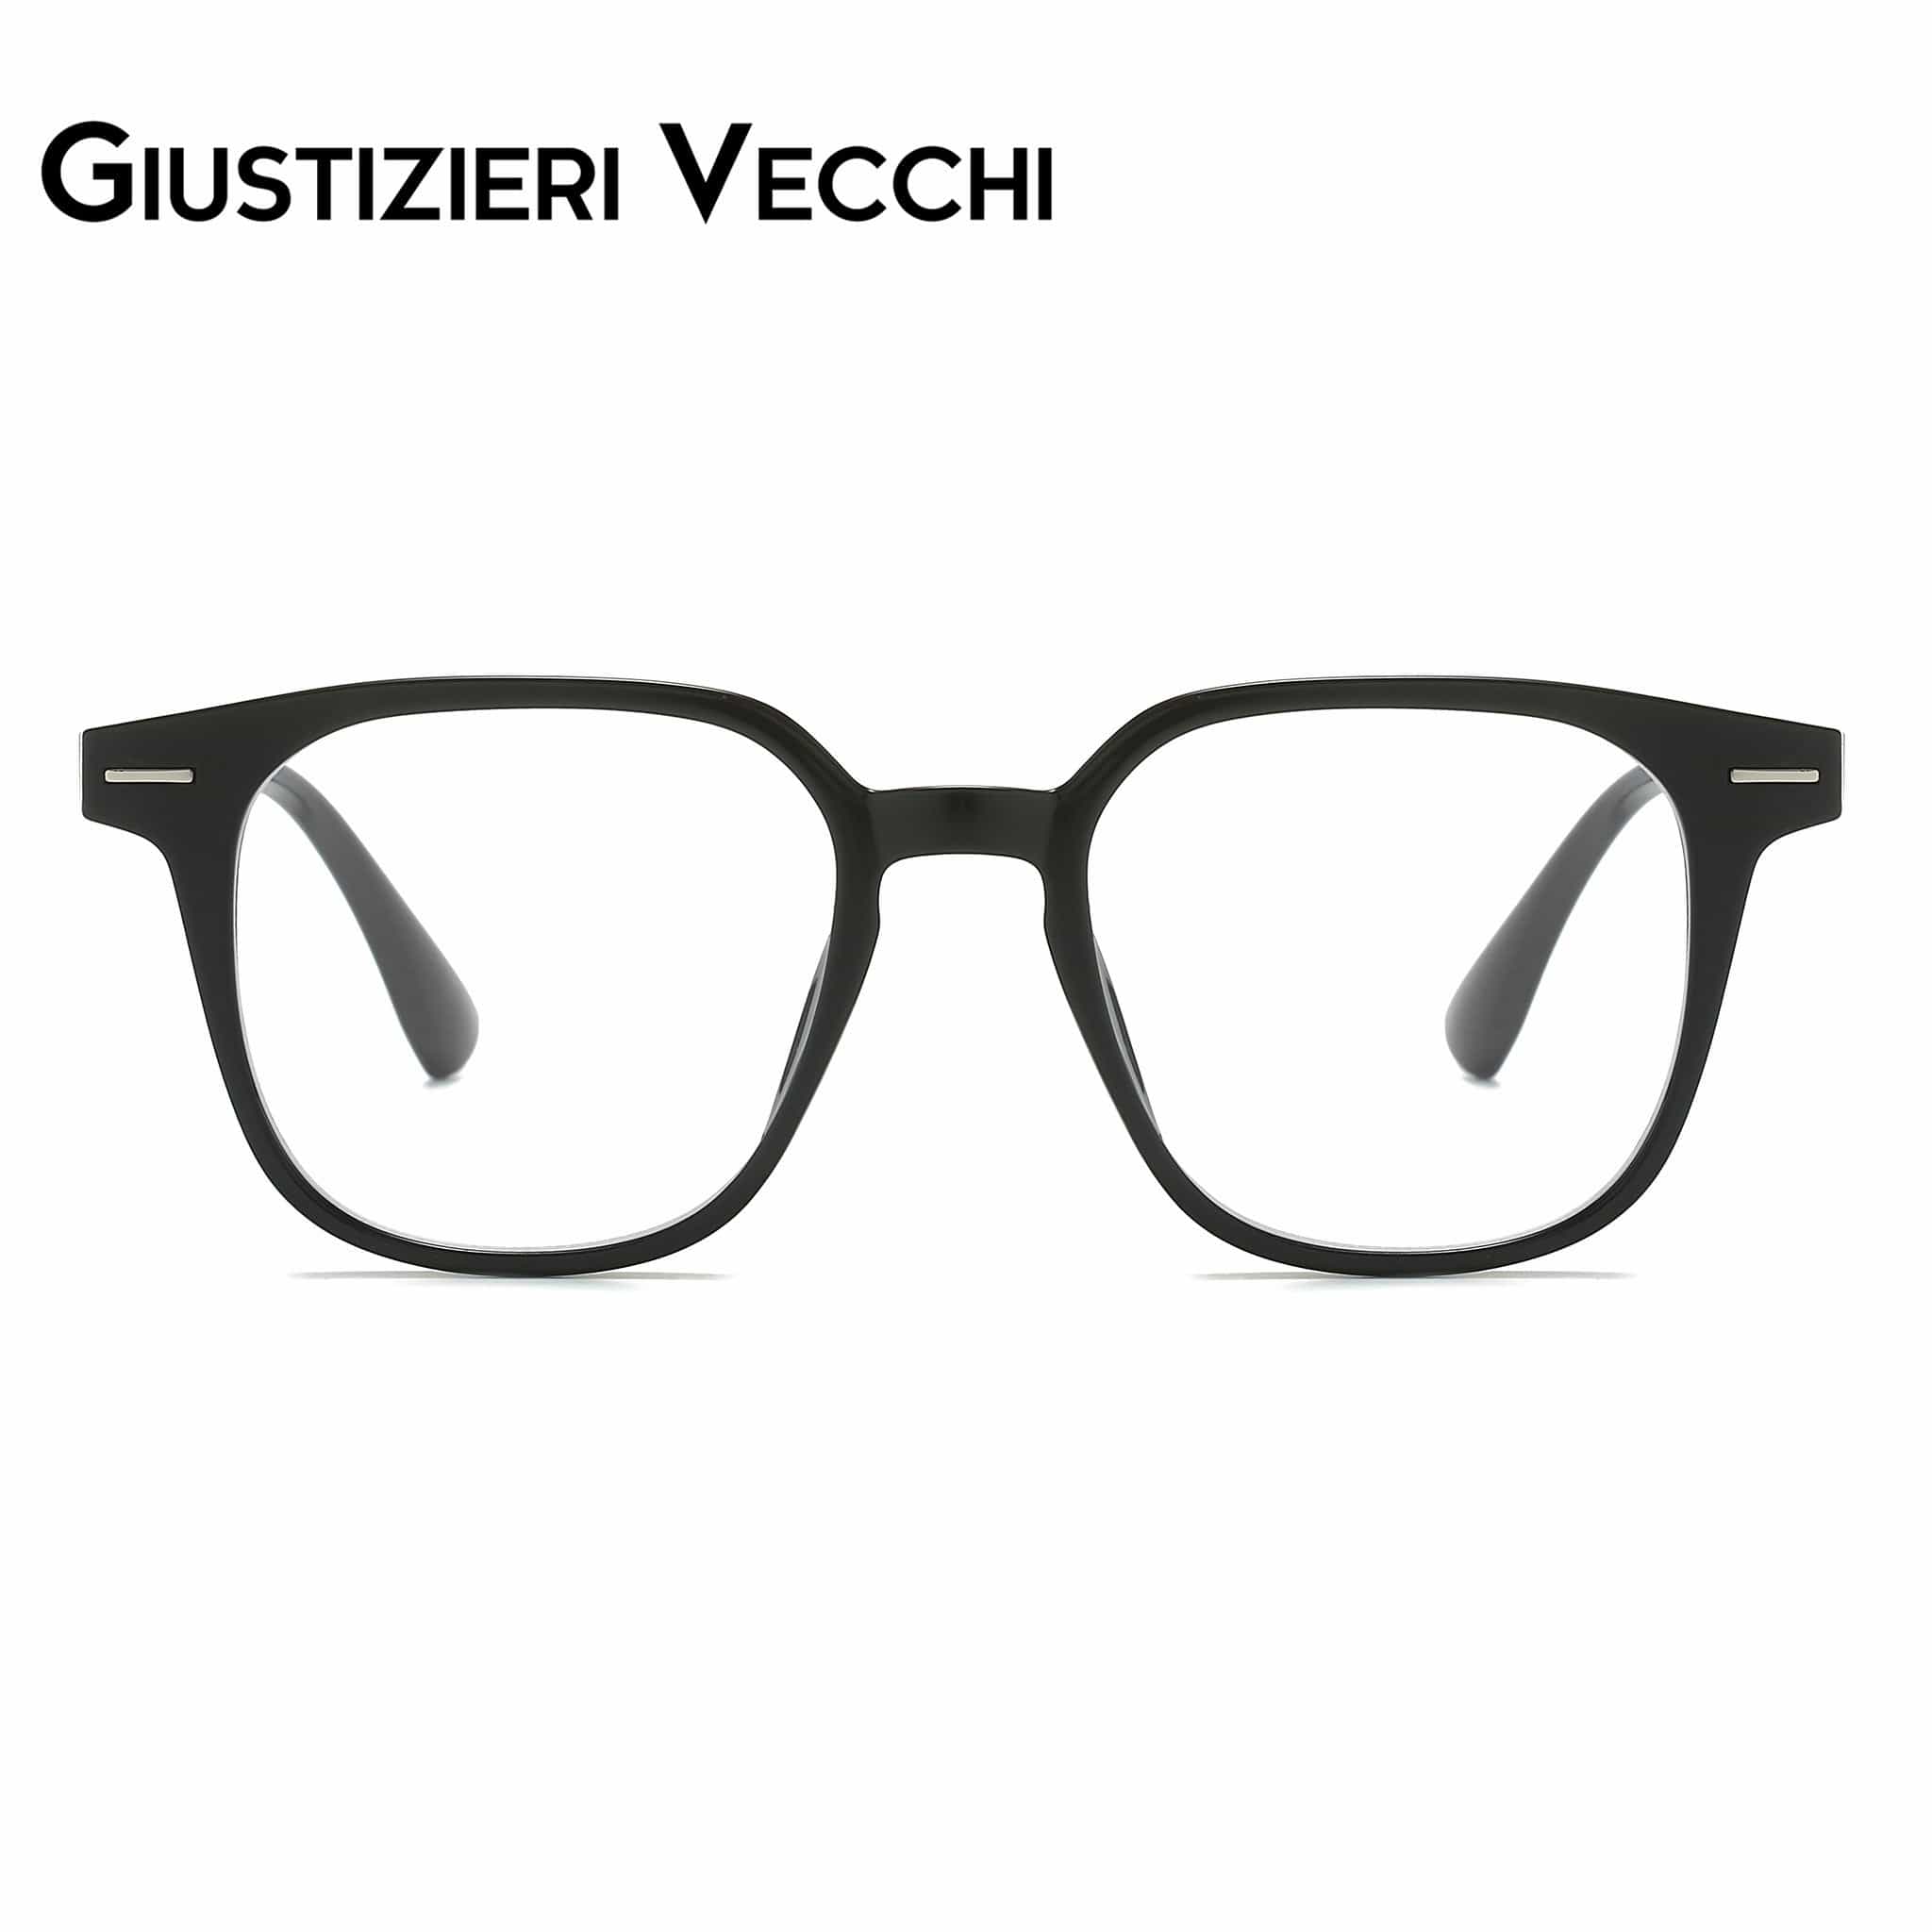 GIUSTIZIERI VECCHI Eyeglasses Small / Black IceWave Uno